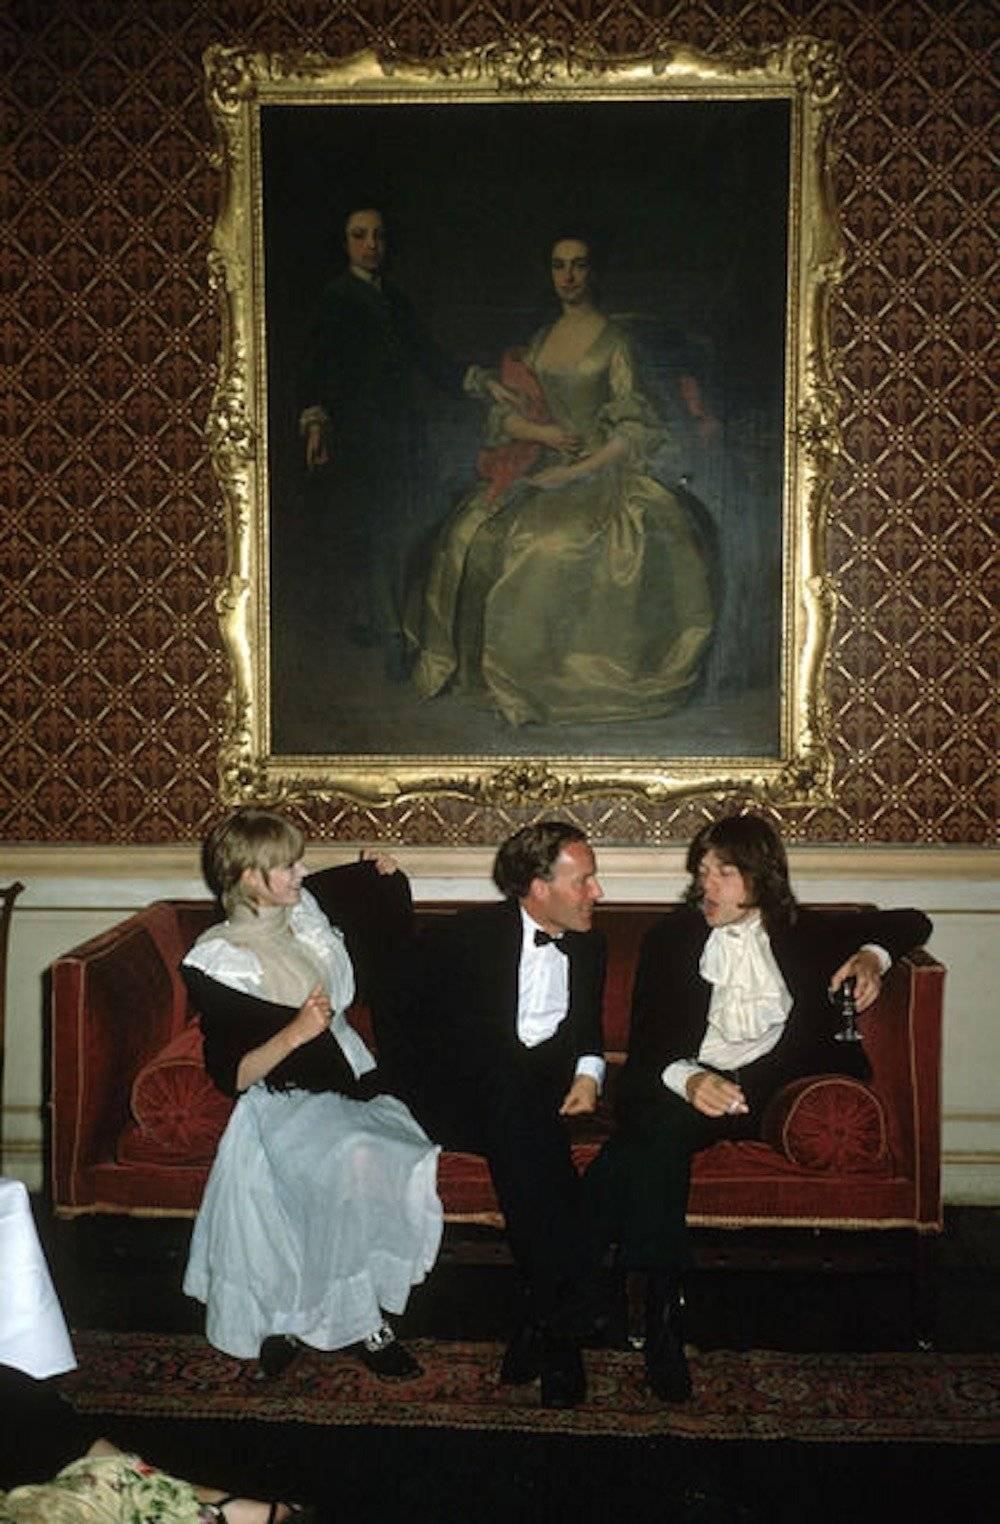 Pop und Gesellschaft
Nachlass-Edition

1968: Von links nach rechts: Die Sängerin Marianne Faithfull, der ehrenwerte Desmond Guinness und Mick Jagger (von den Rolling Stones) sitzen auf einem Sofa unter einem großen goldgerahmten Gemälde einer Frau